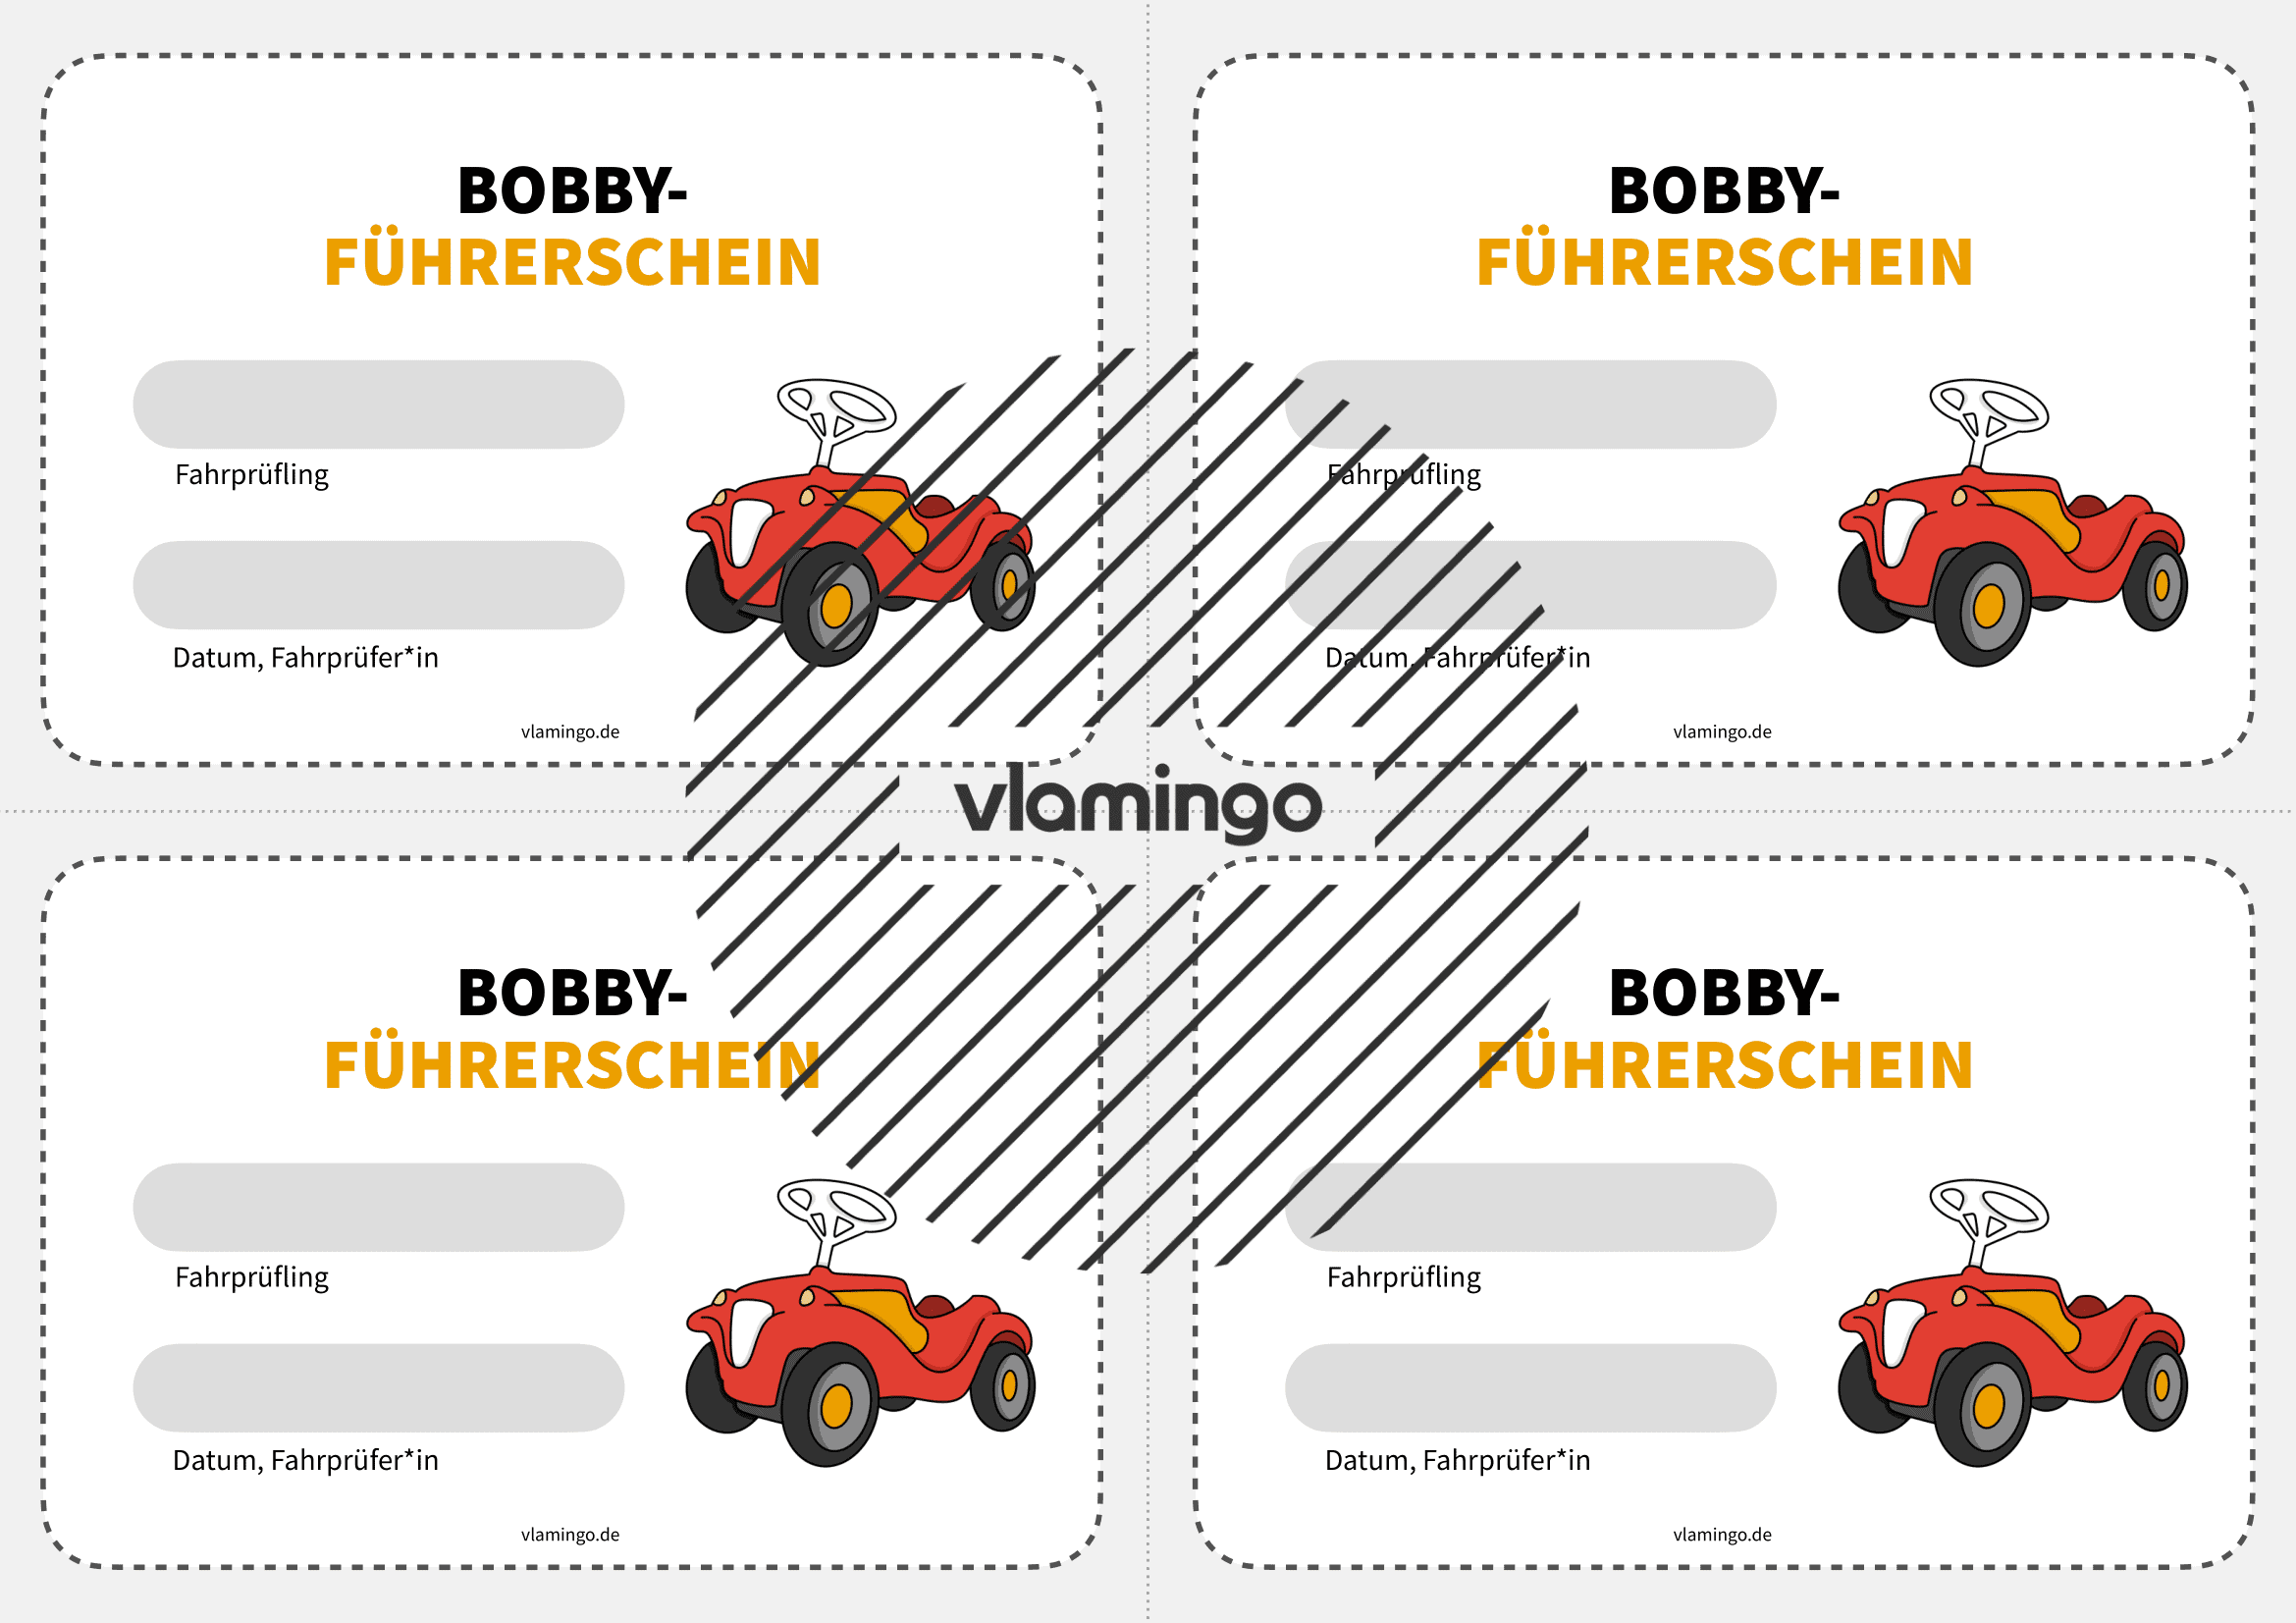 Bobby-Führerschein - Vorlage 1